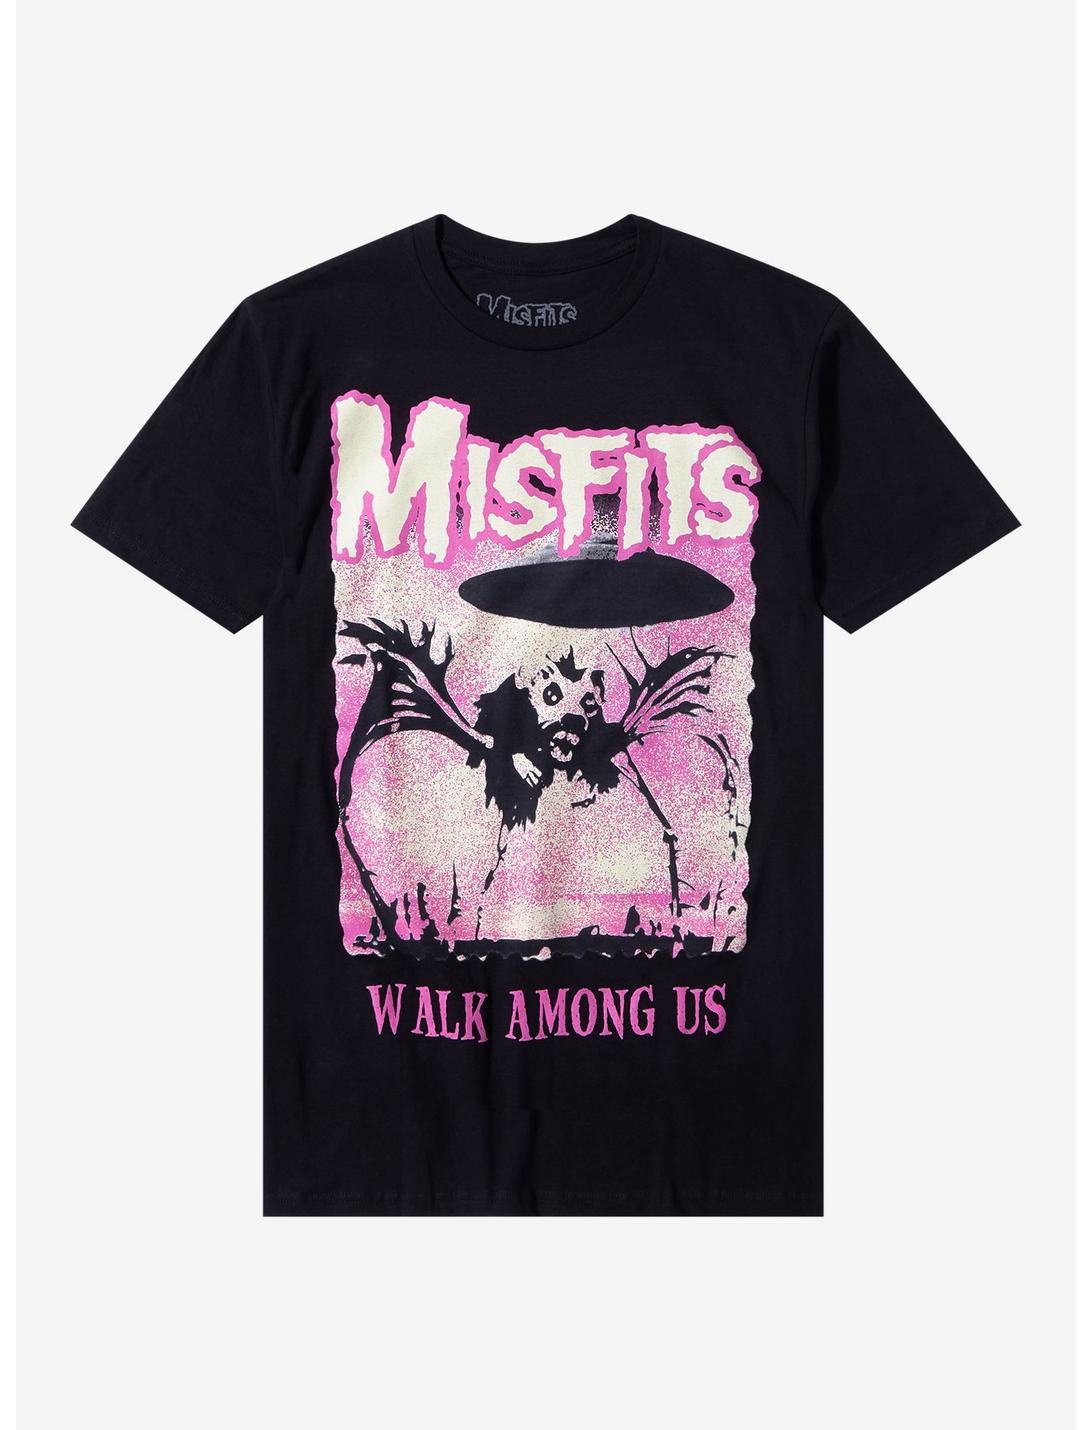 Misfits Walk Among Us Album Art T-Shirt, BLACK, hi-res